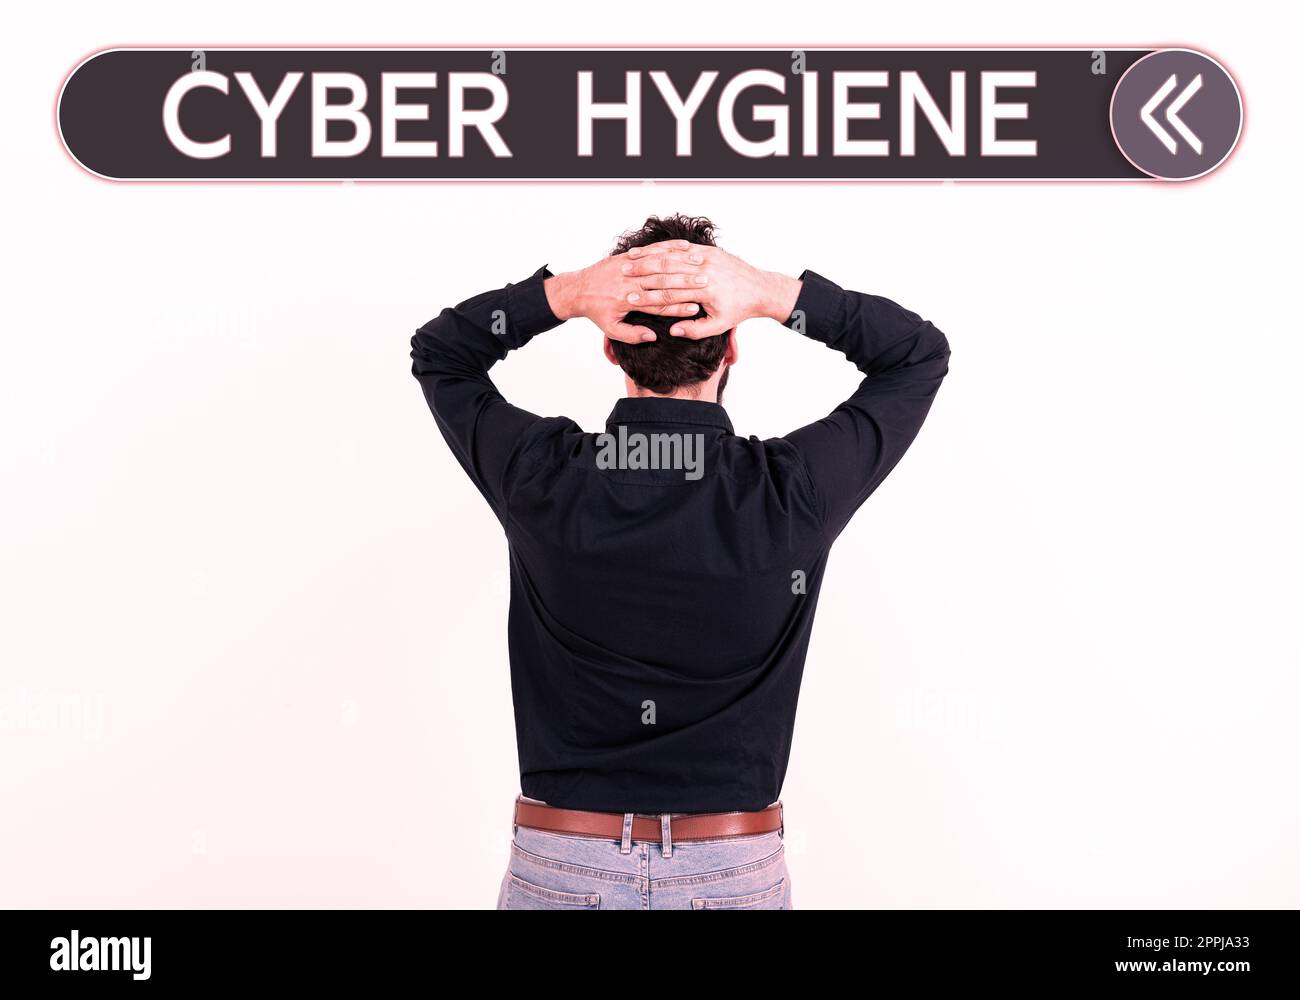 Inspiration montrant le signe Cyber hygiène. Mot écrit sur les mesures que les utilisateurs d'ordinateur prennent pour améliorer leur cyber-sécurité Banque D'Images